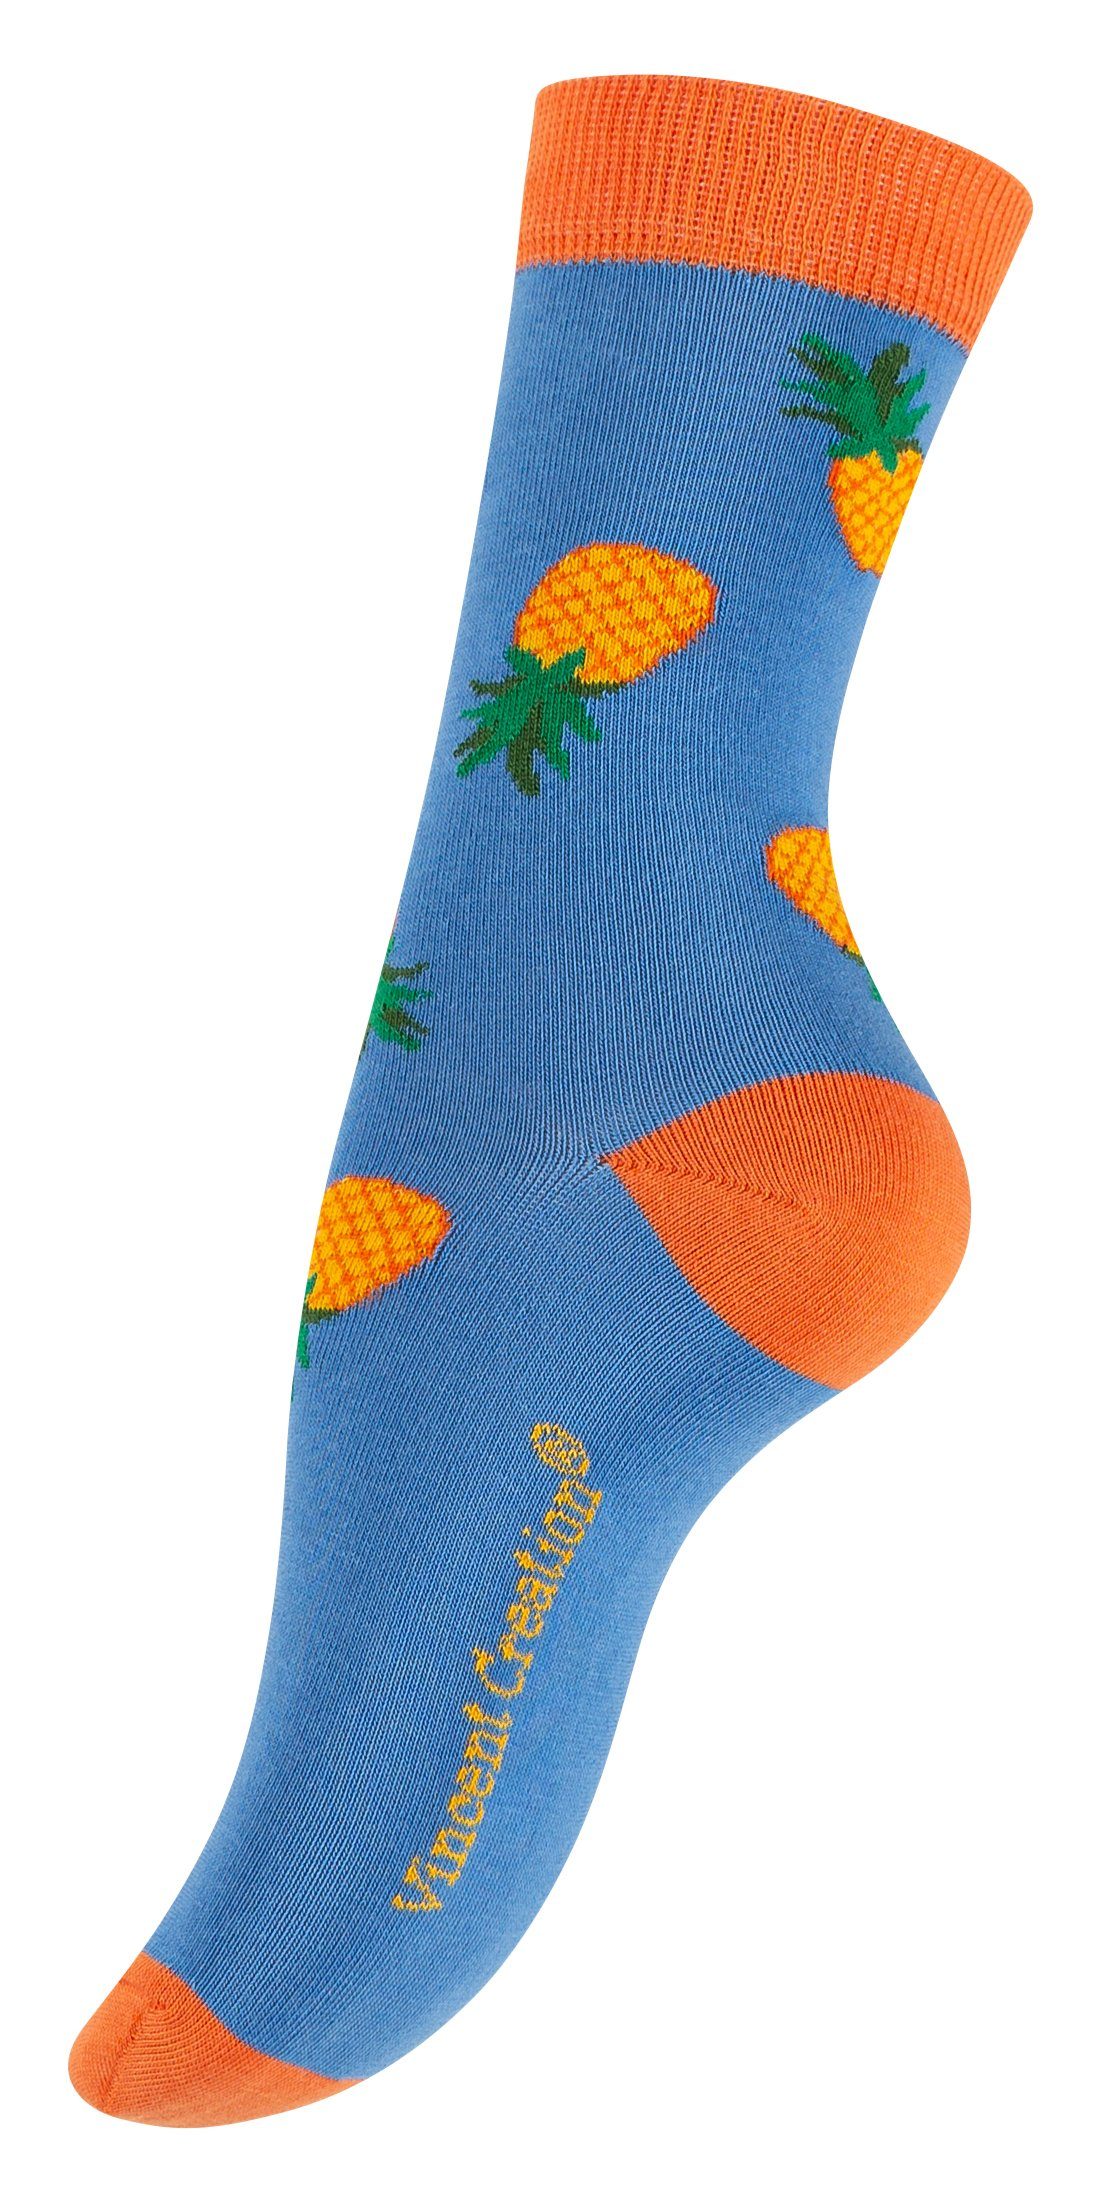 Baumwollqualität (3-Paar) Creation® Socken in Früchte angenehmer Design Vincent mit